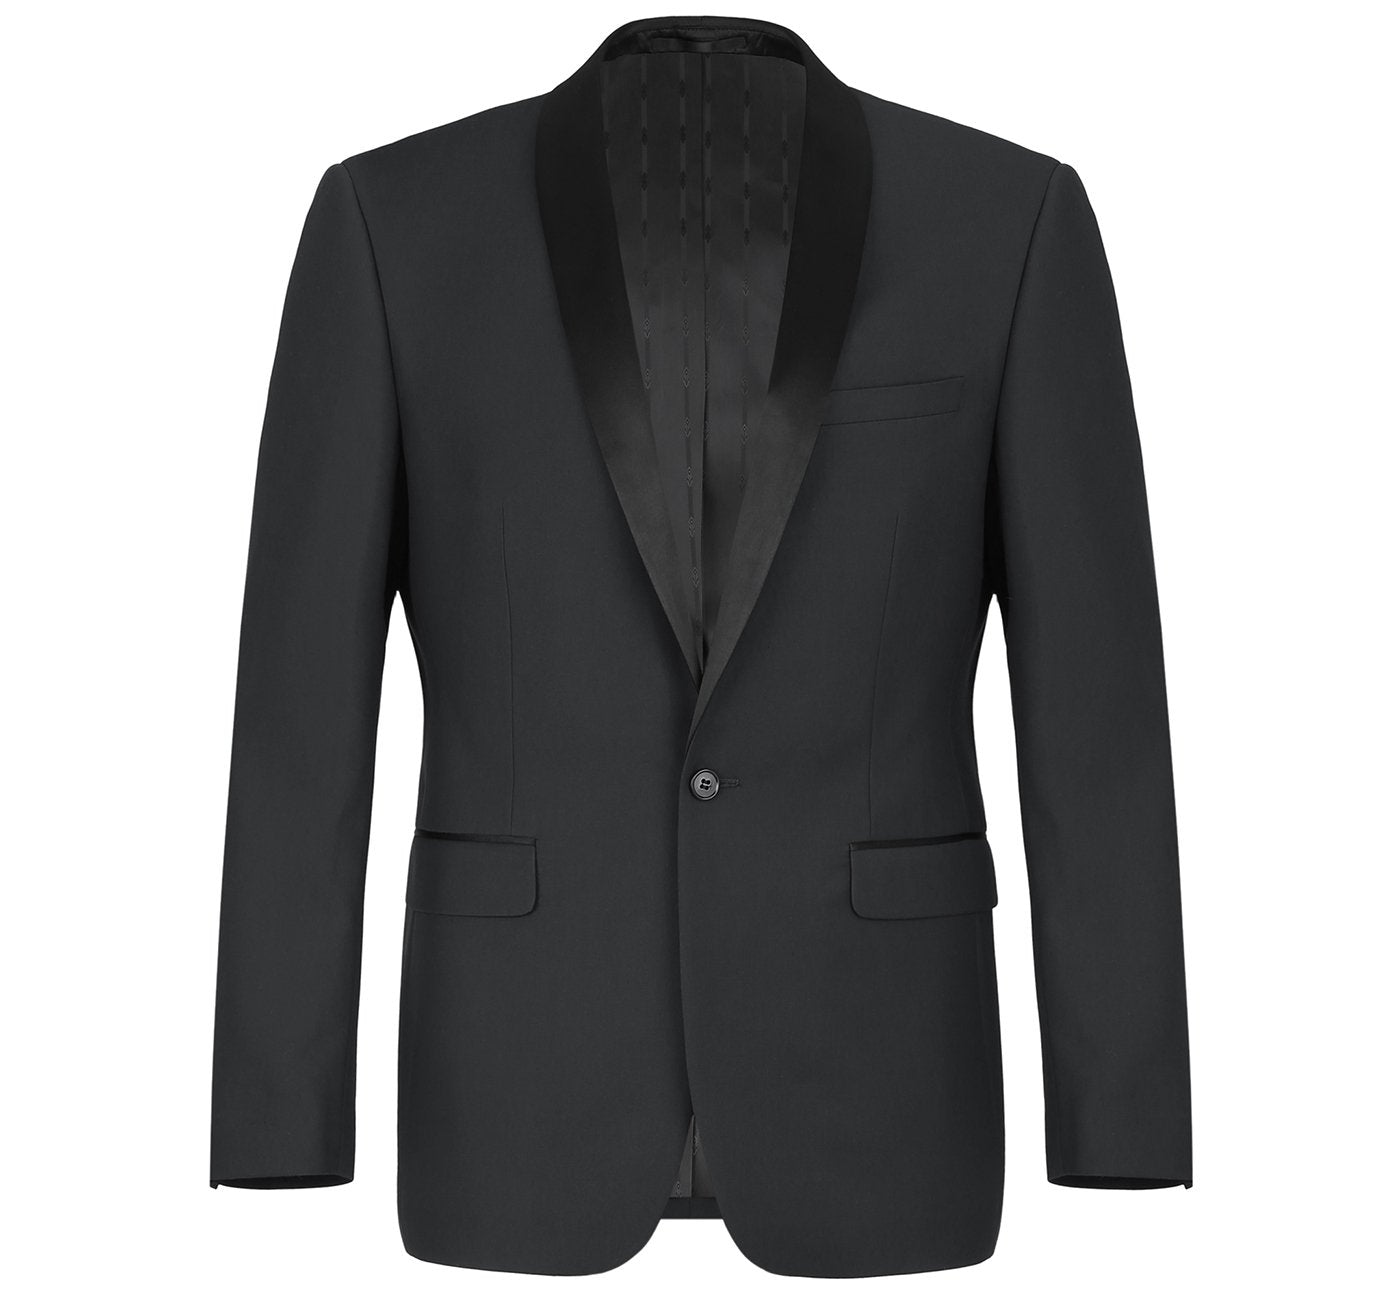 201-1 Men's Slim Fit 2-Piece Shawl Lapel Tuxedo Suit